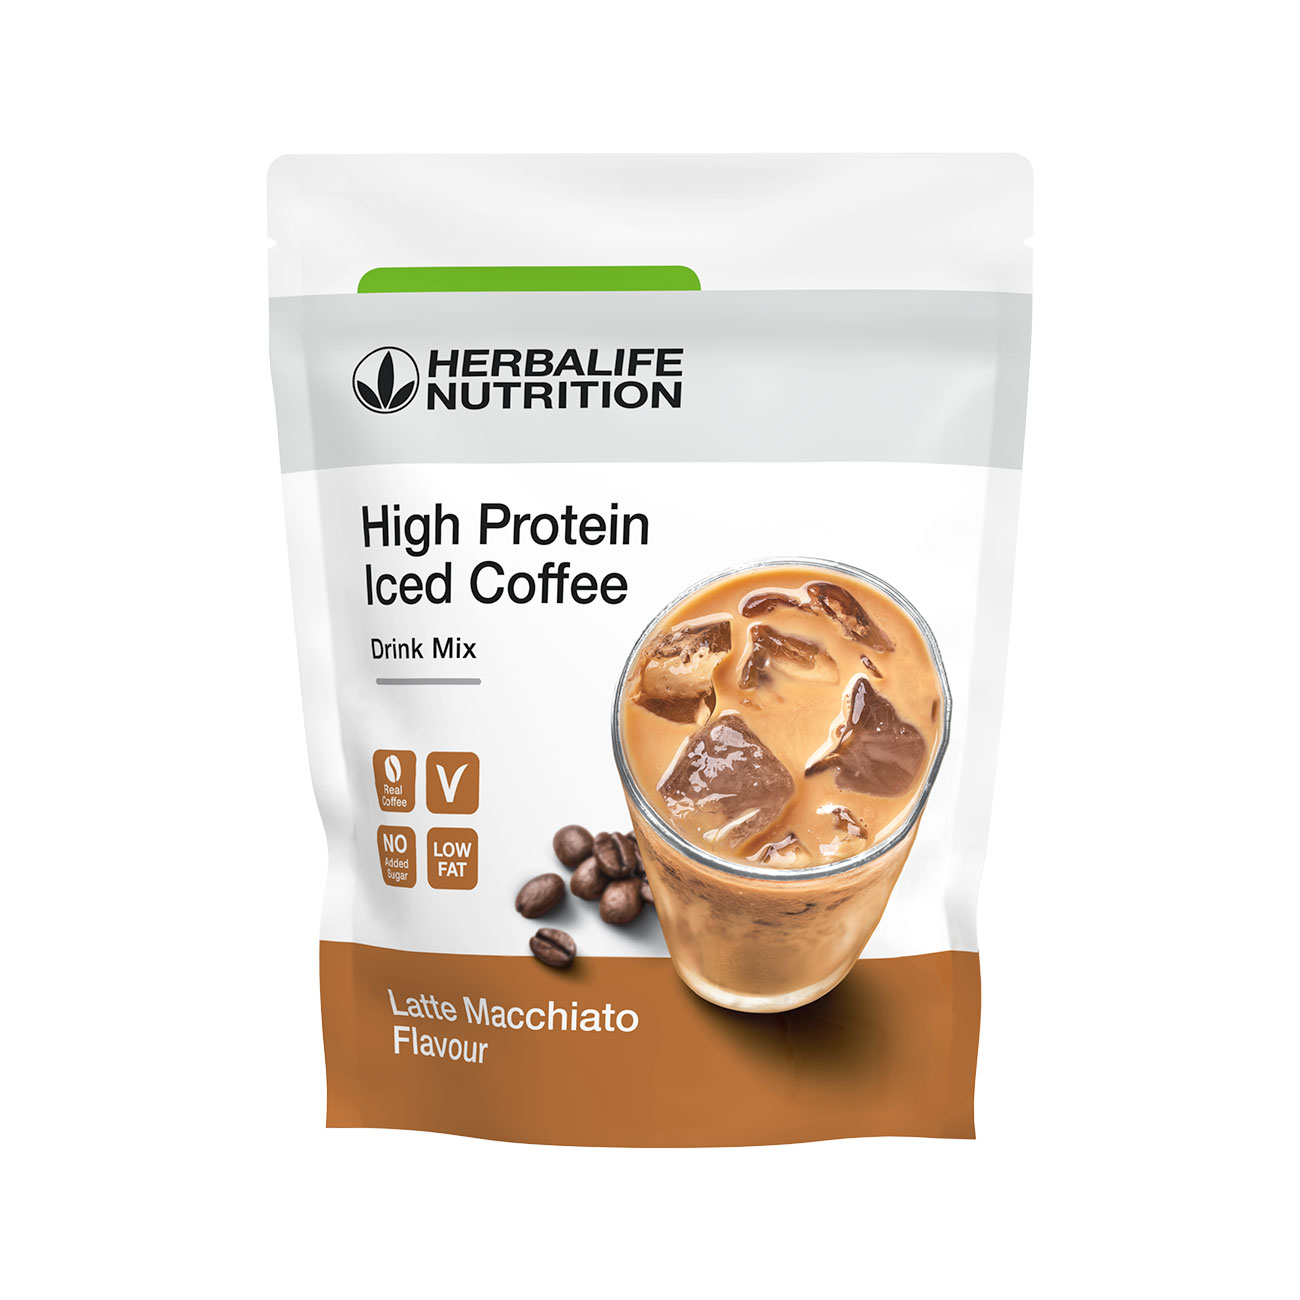 High Protein Iced Coffee café frappé protéiné latte macchiato product shot